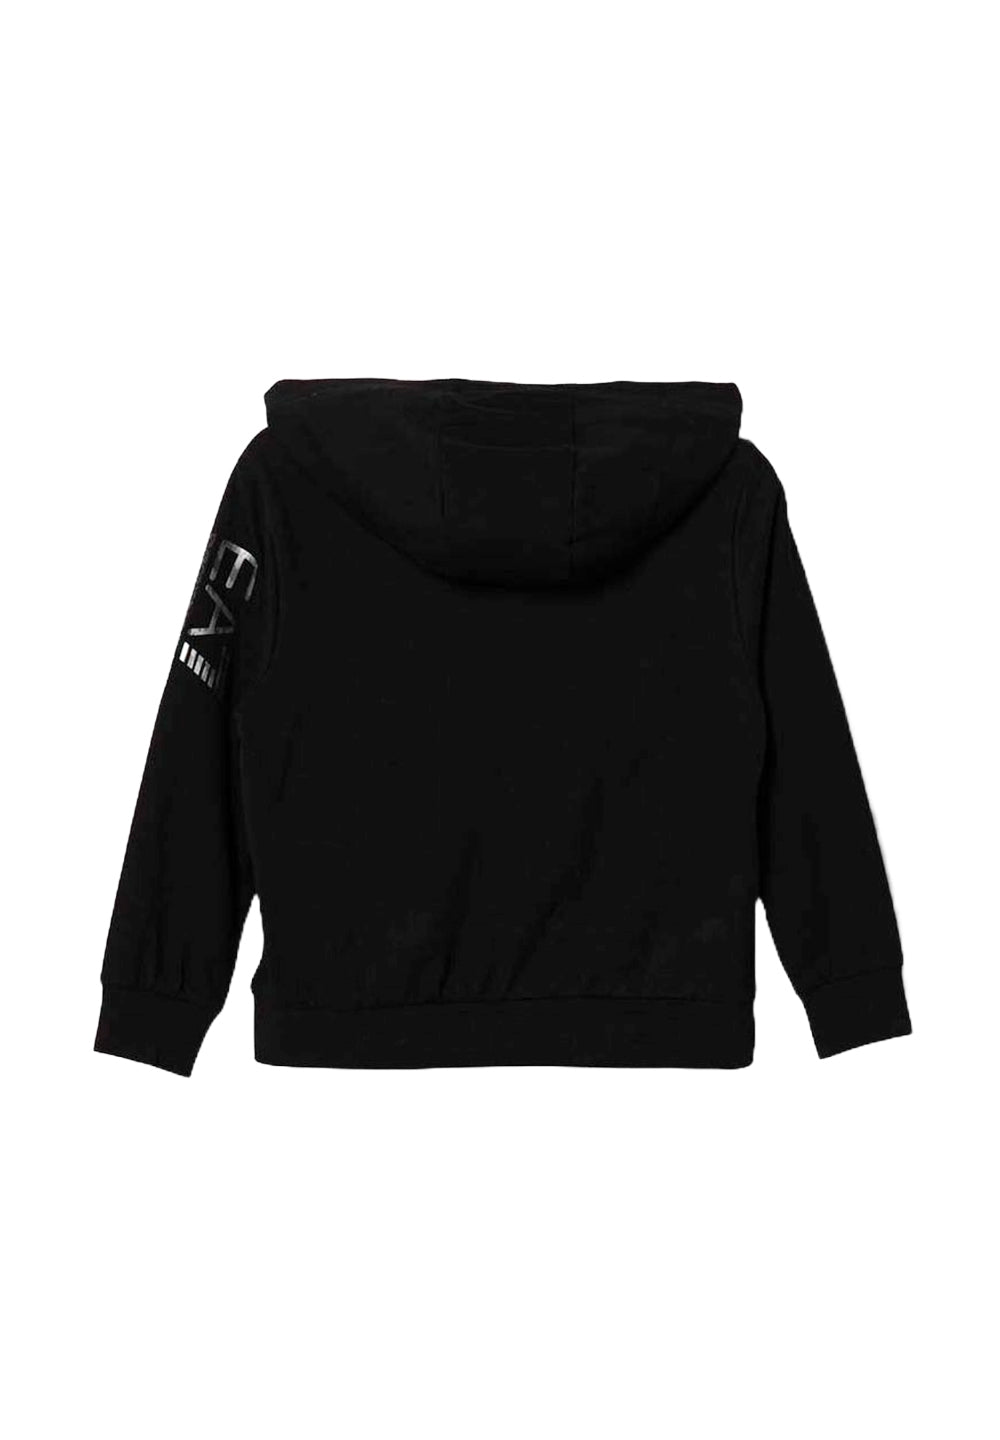 Schwarzes Sweatshirt mit Reißverschluss für Jungen